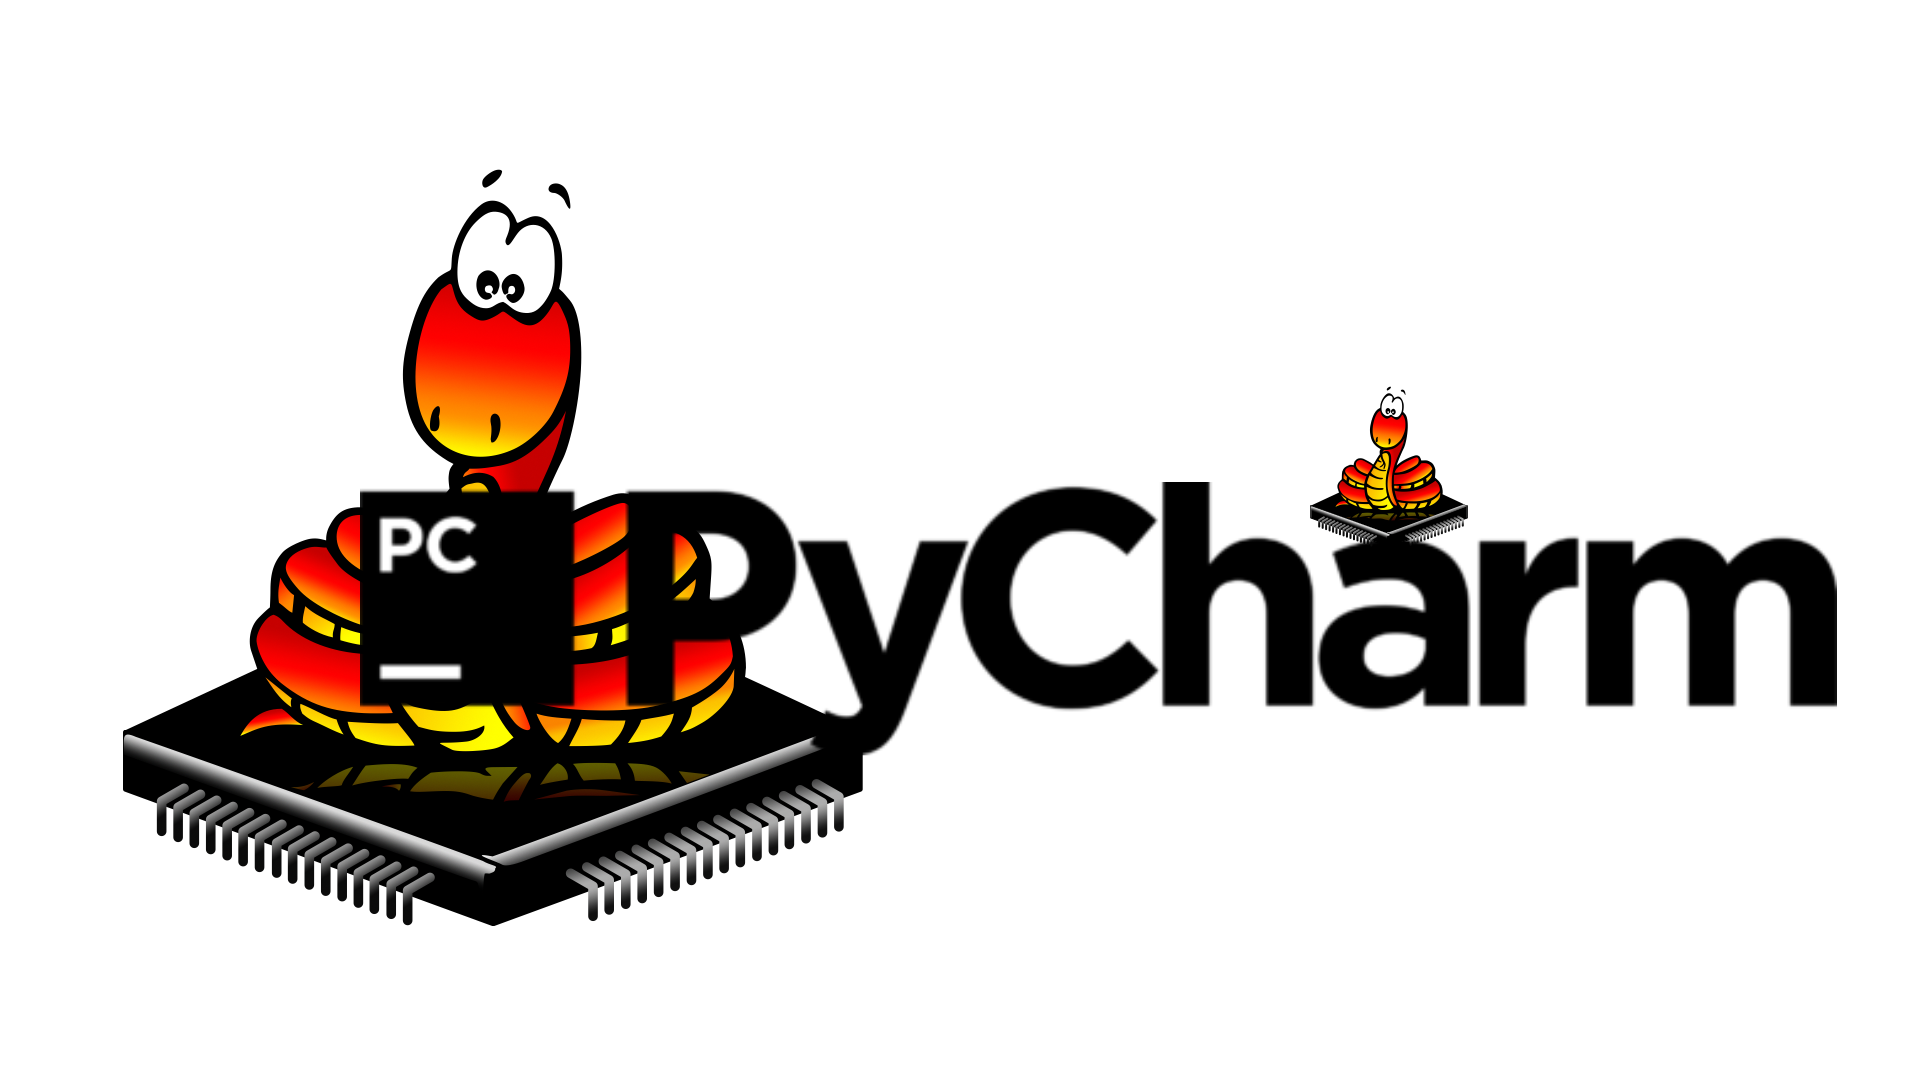 Малвертайзинг на примере PyCharm: как контекстная реклама обманывает  Python-разработчиков